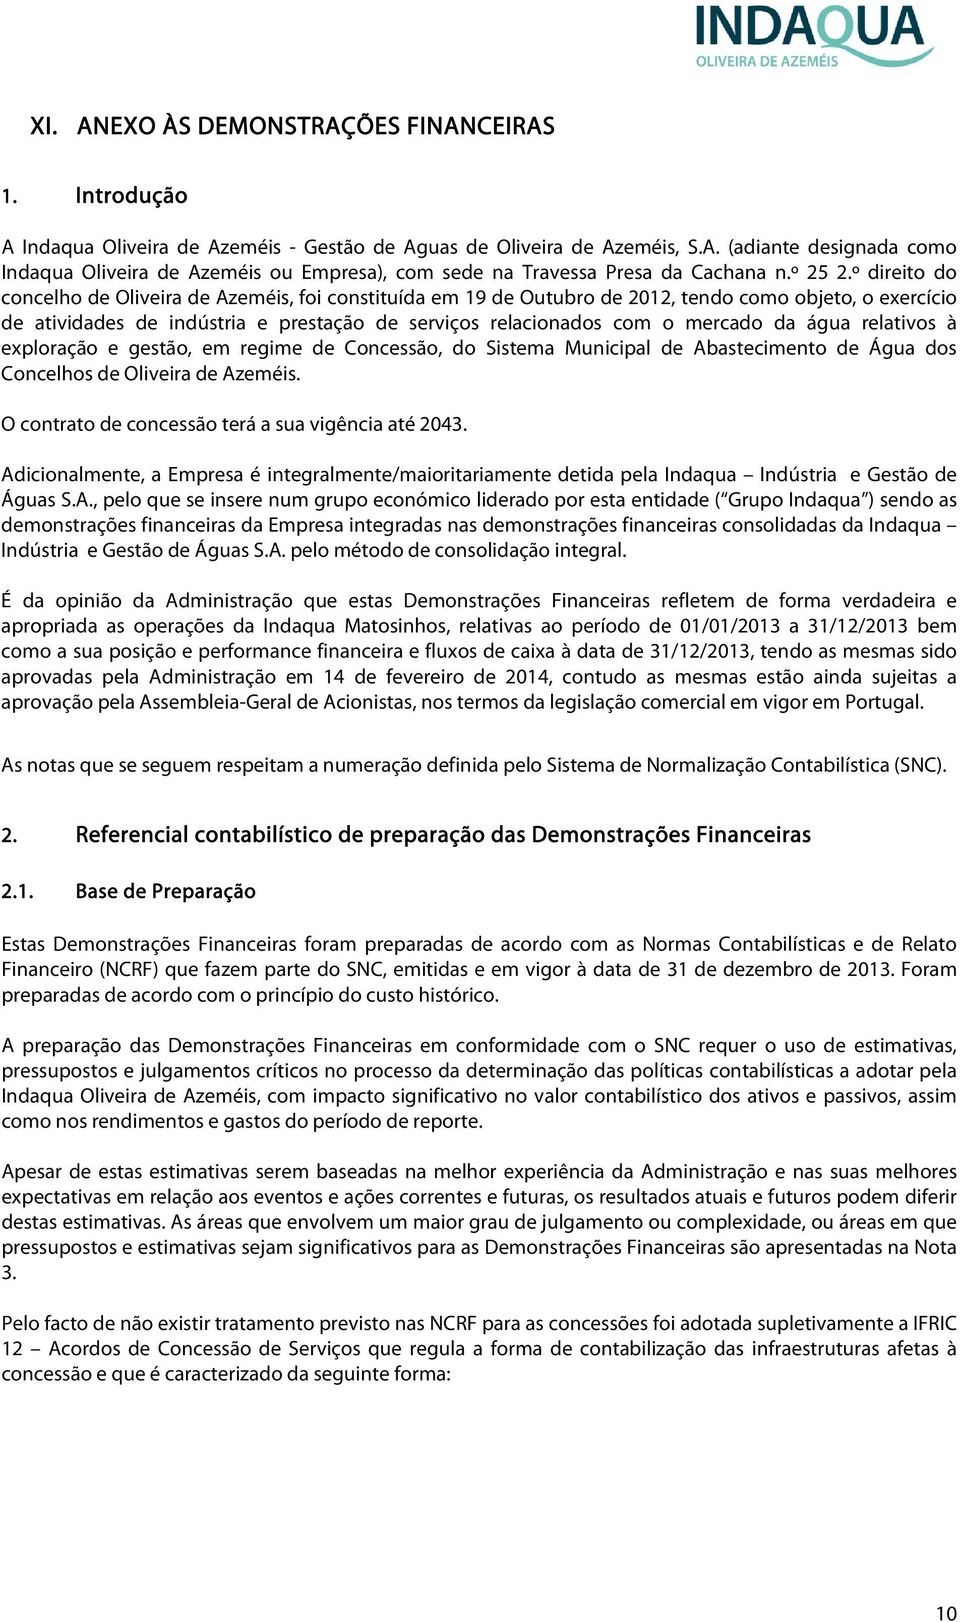 º direito do concelho de Oliveira de Azeméis, foi constituída em 19 de Outubro de 2012, tendo como objeto, o exercício de atividades de indústria e prestação de serviços relacionados com o mercado da